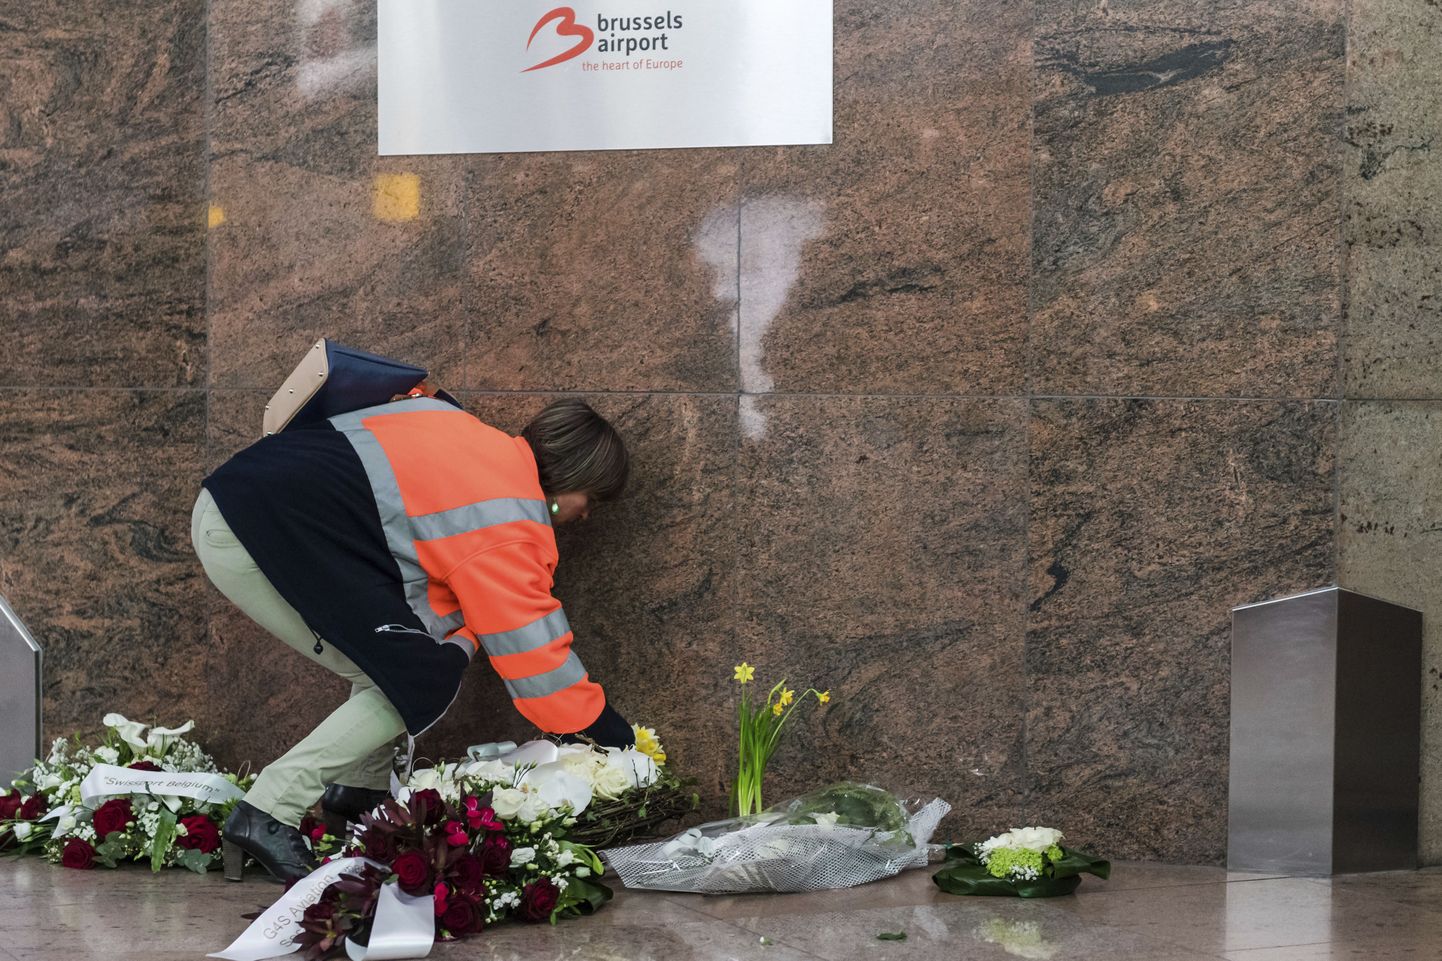 Brüsseli lennujaama töötaja mälestusmärgi ette lilli asetamas.